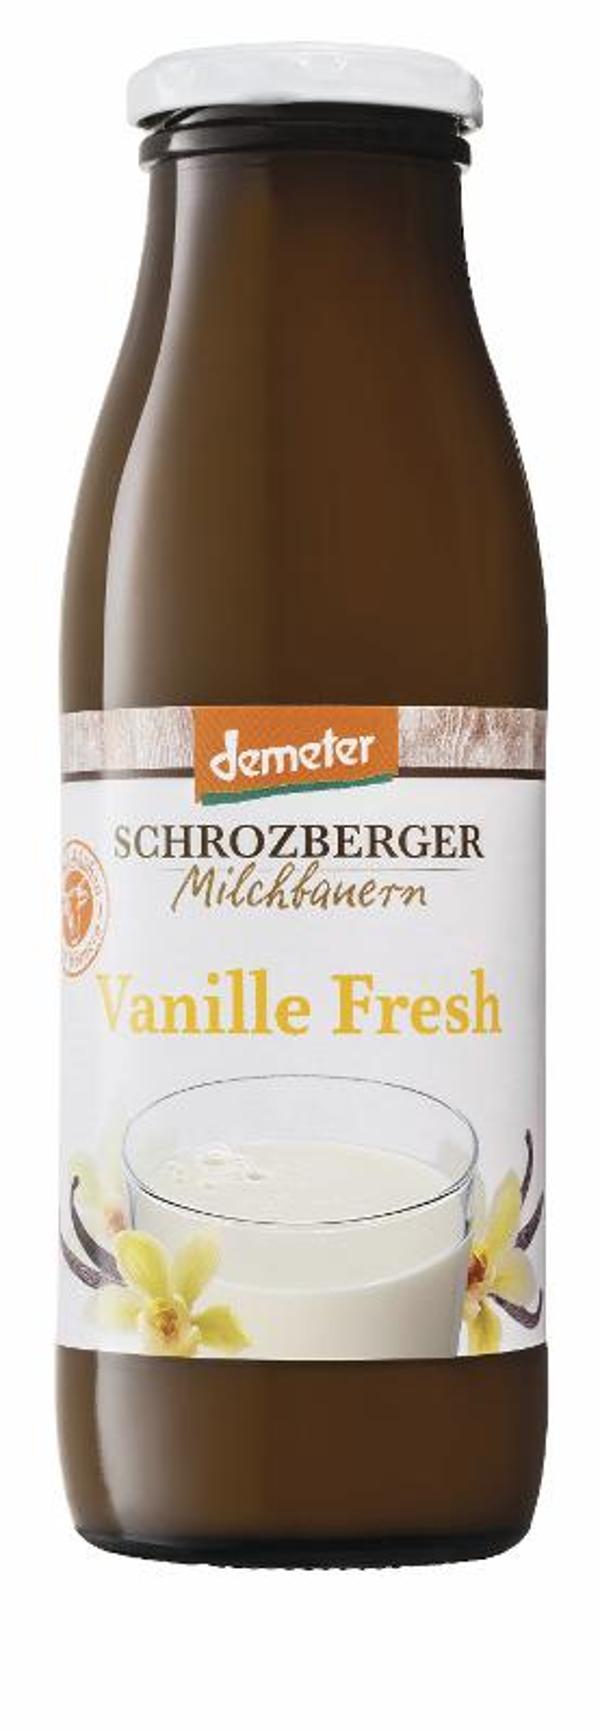 Produktfoto zu Vanille fresh  Sauermilch